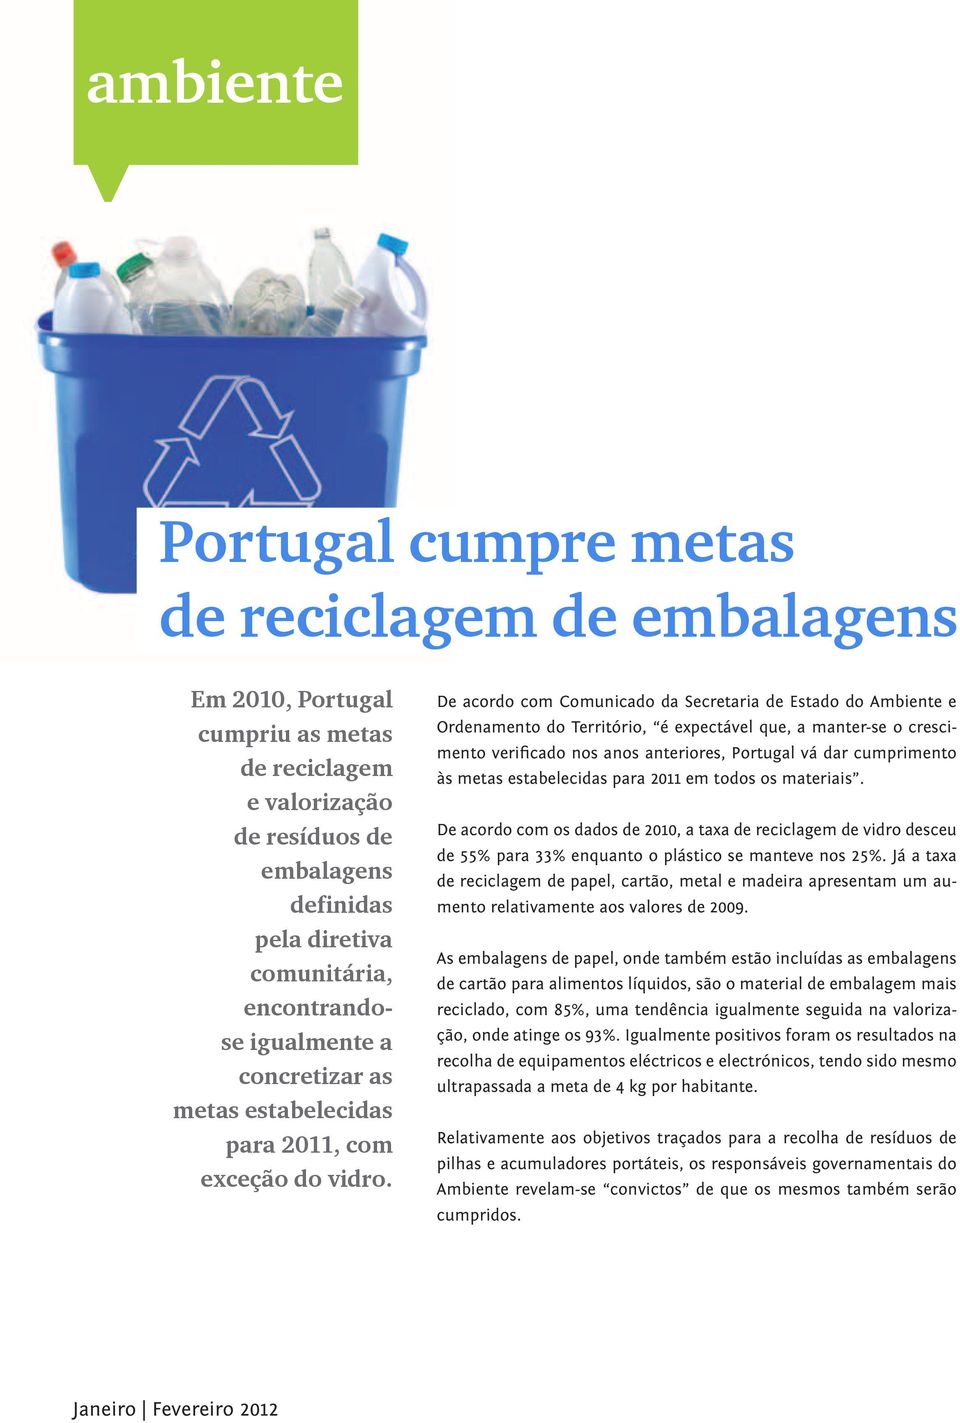 De acordo com Comunicado da Secretaria de Estado do Ambiente e Ordenamento do Território, é expectável que, a manter-se o crescimento verificado nos anos anteriores, Portugal vá dar cumprimento às